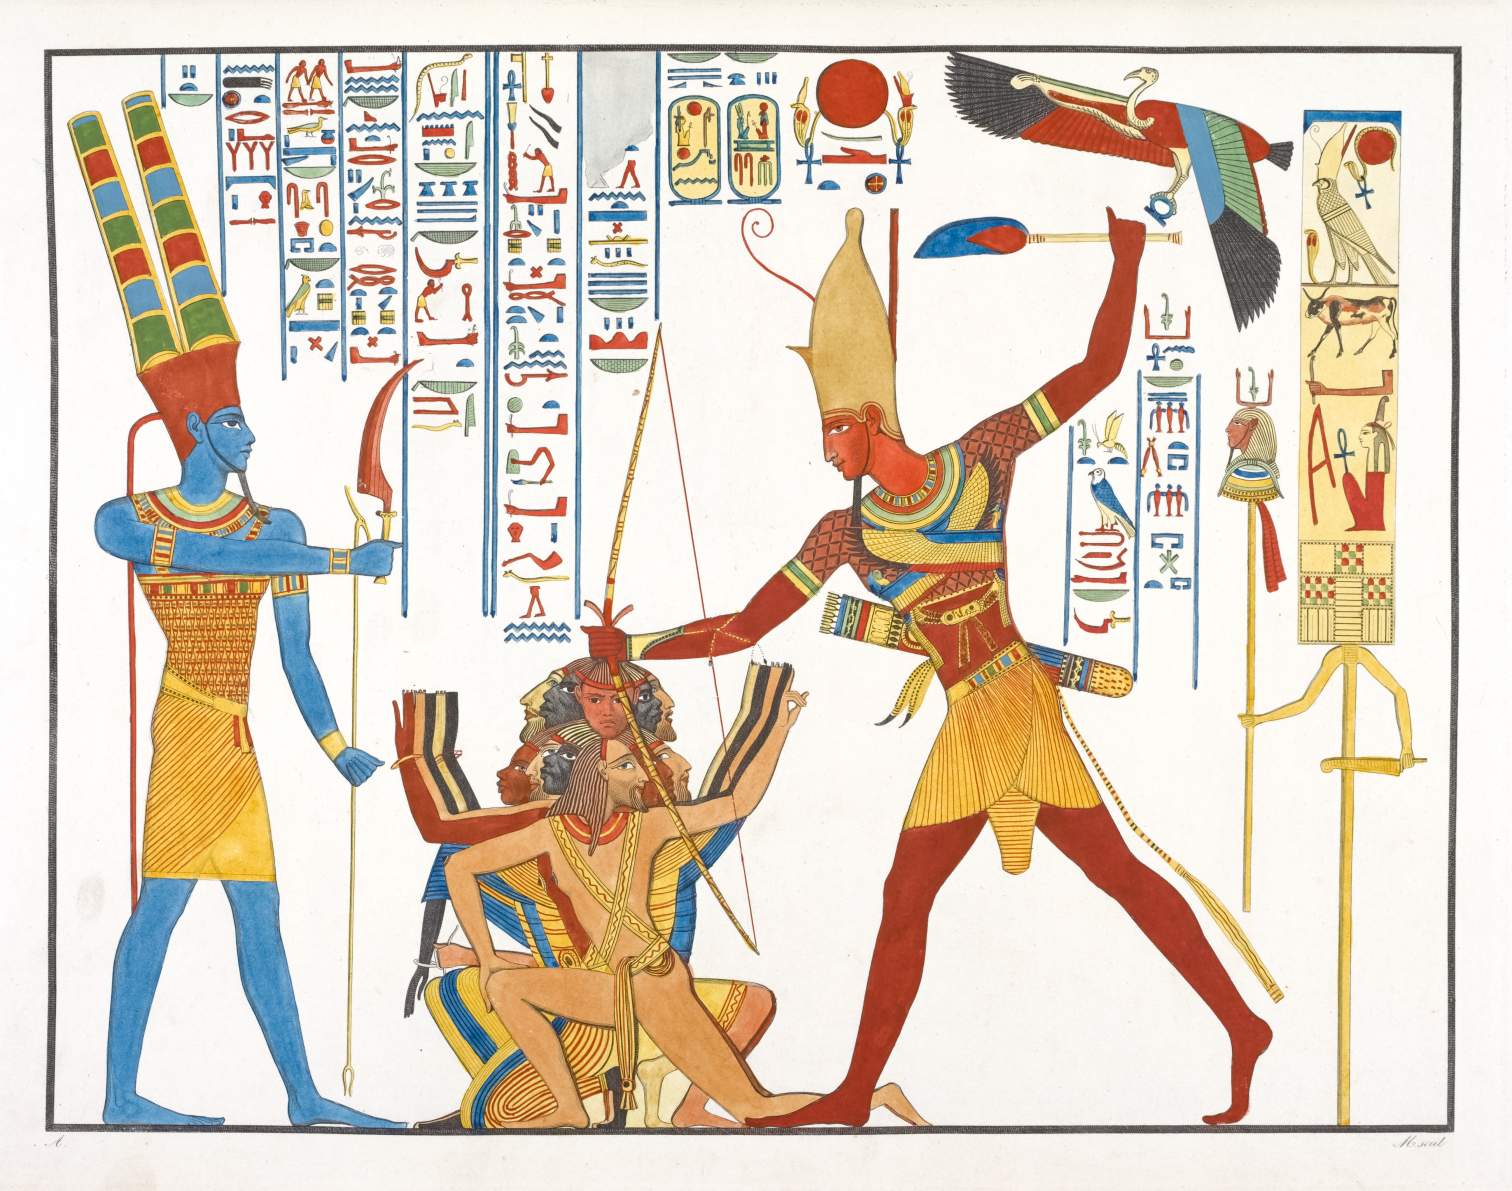 Володіння хопешом для поразки ворогів у єгипетському мистецтві. © Wikimedia Commons